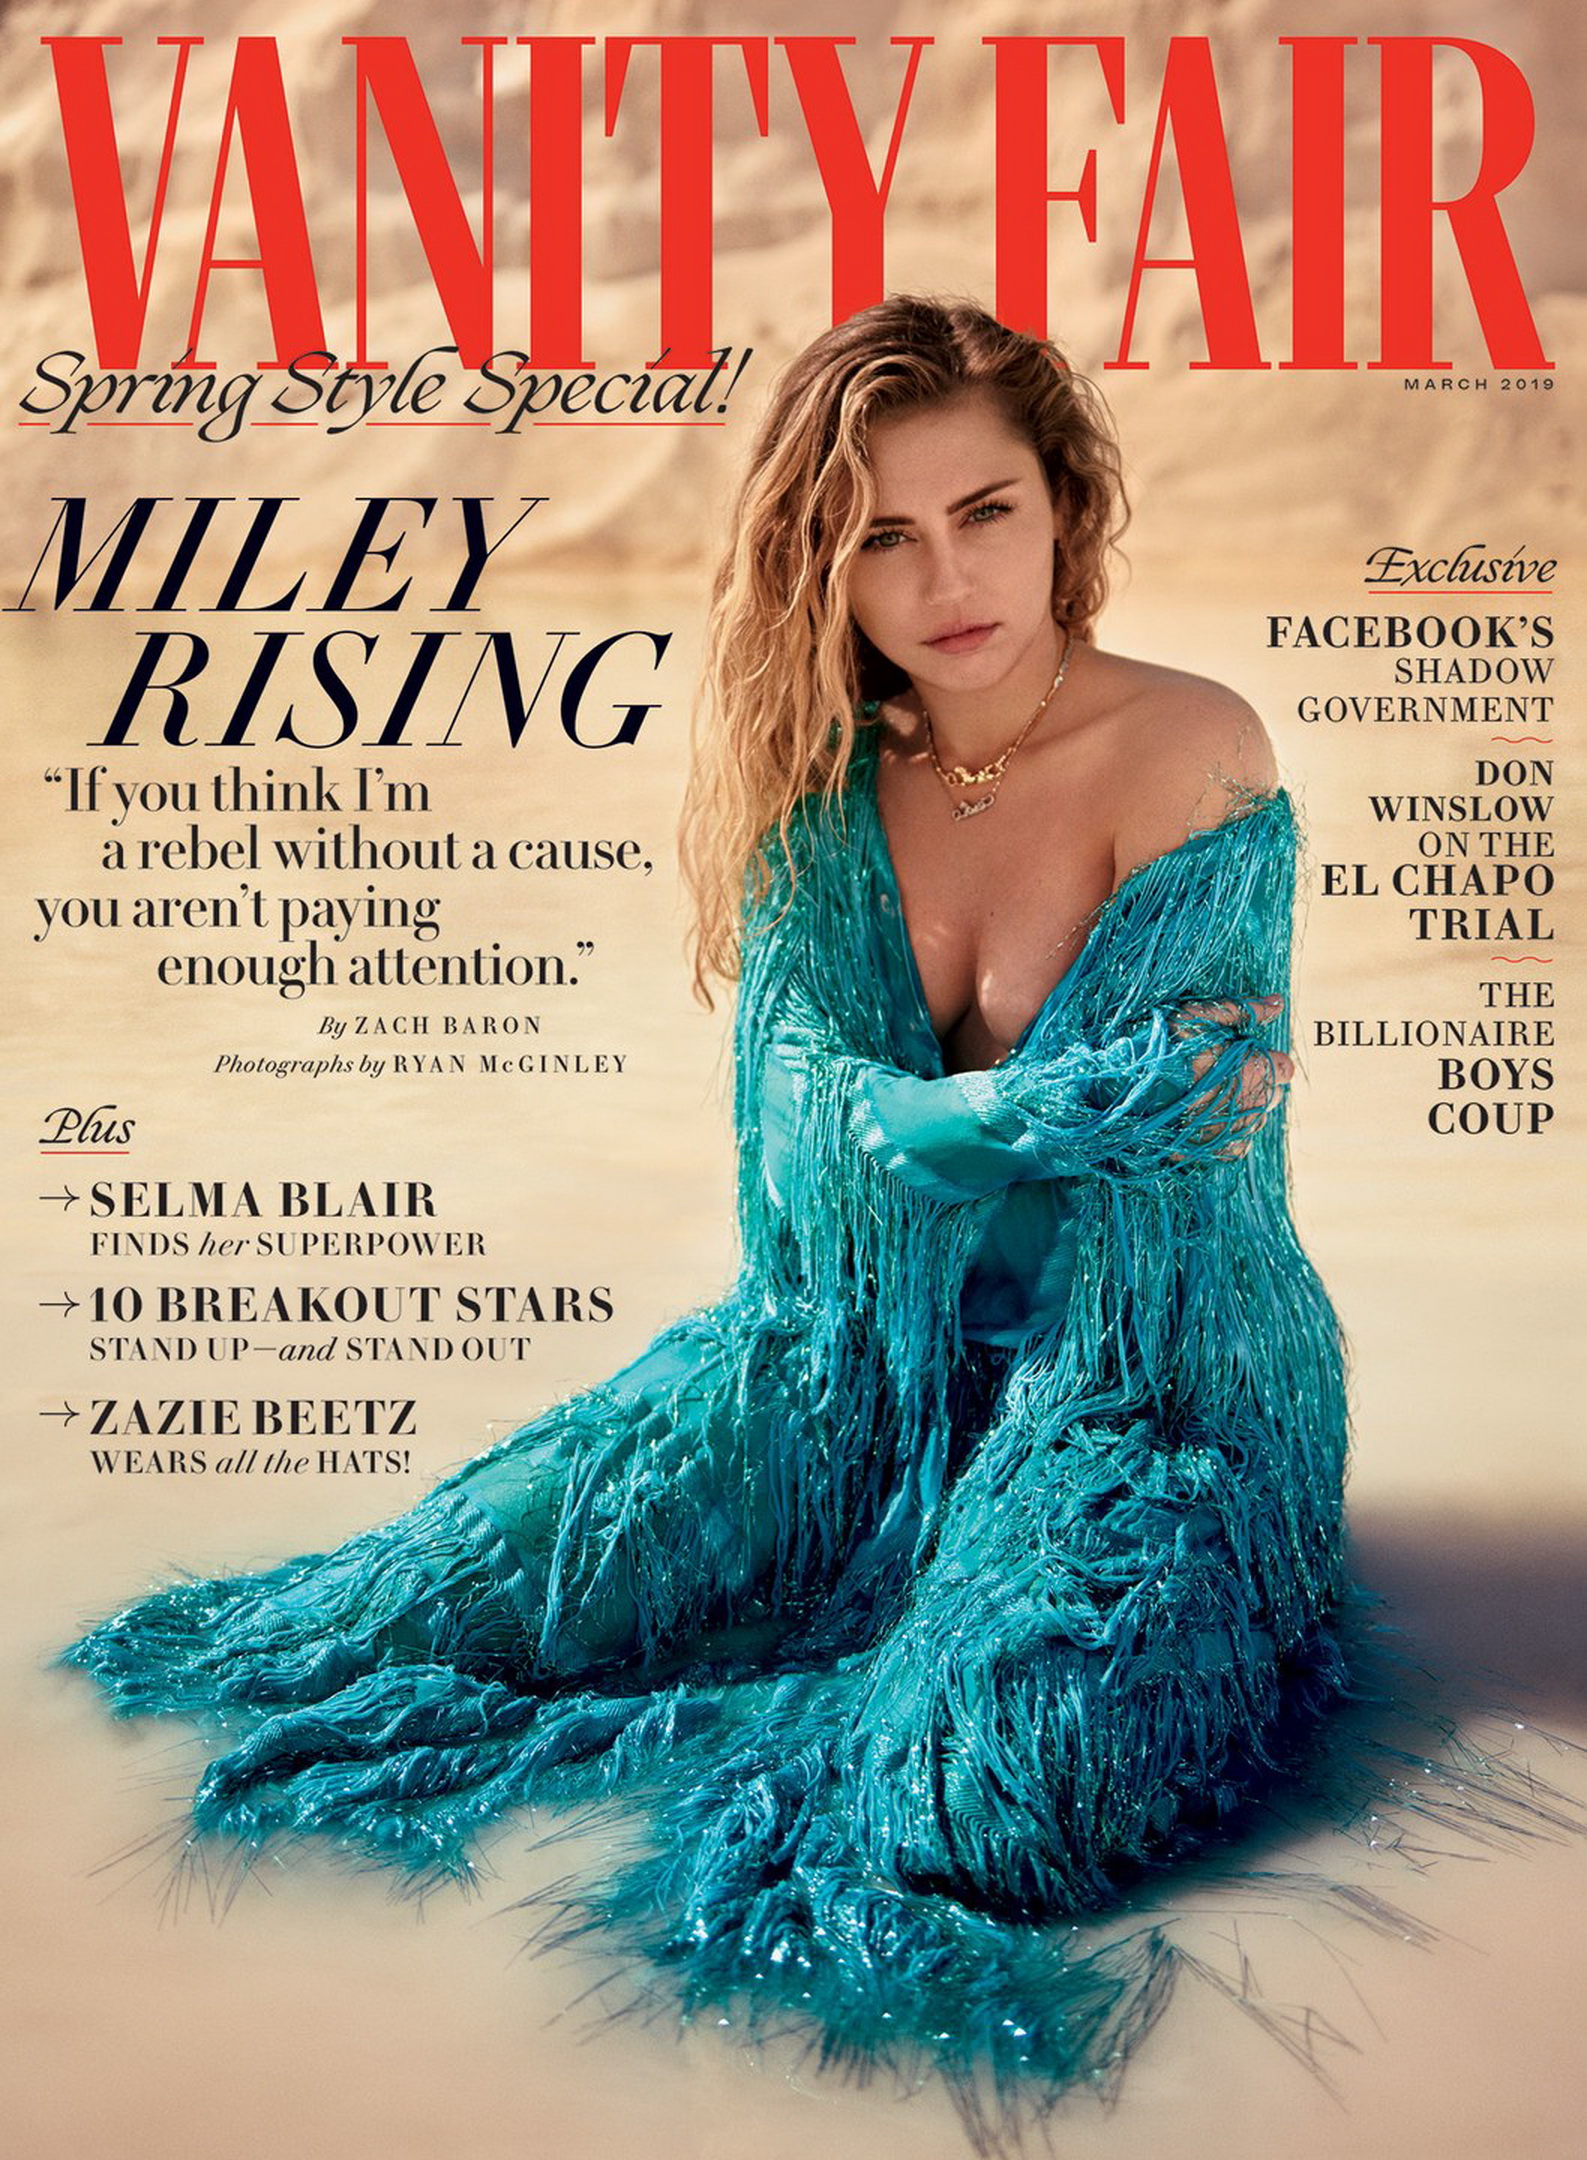 Miley Cyrus braless in mesh top for Vanity Fair March 2019 HQ (5).jpg